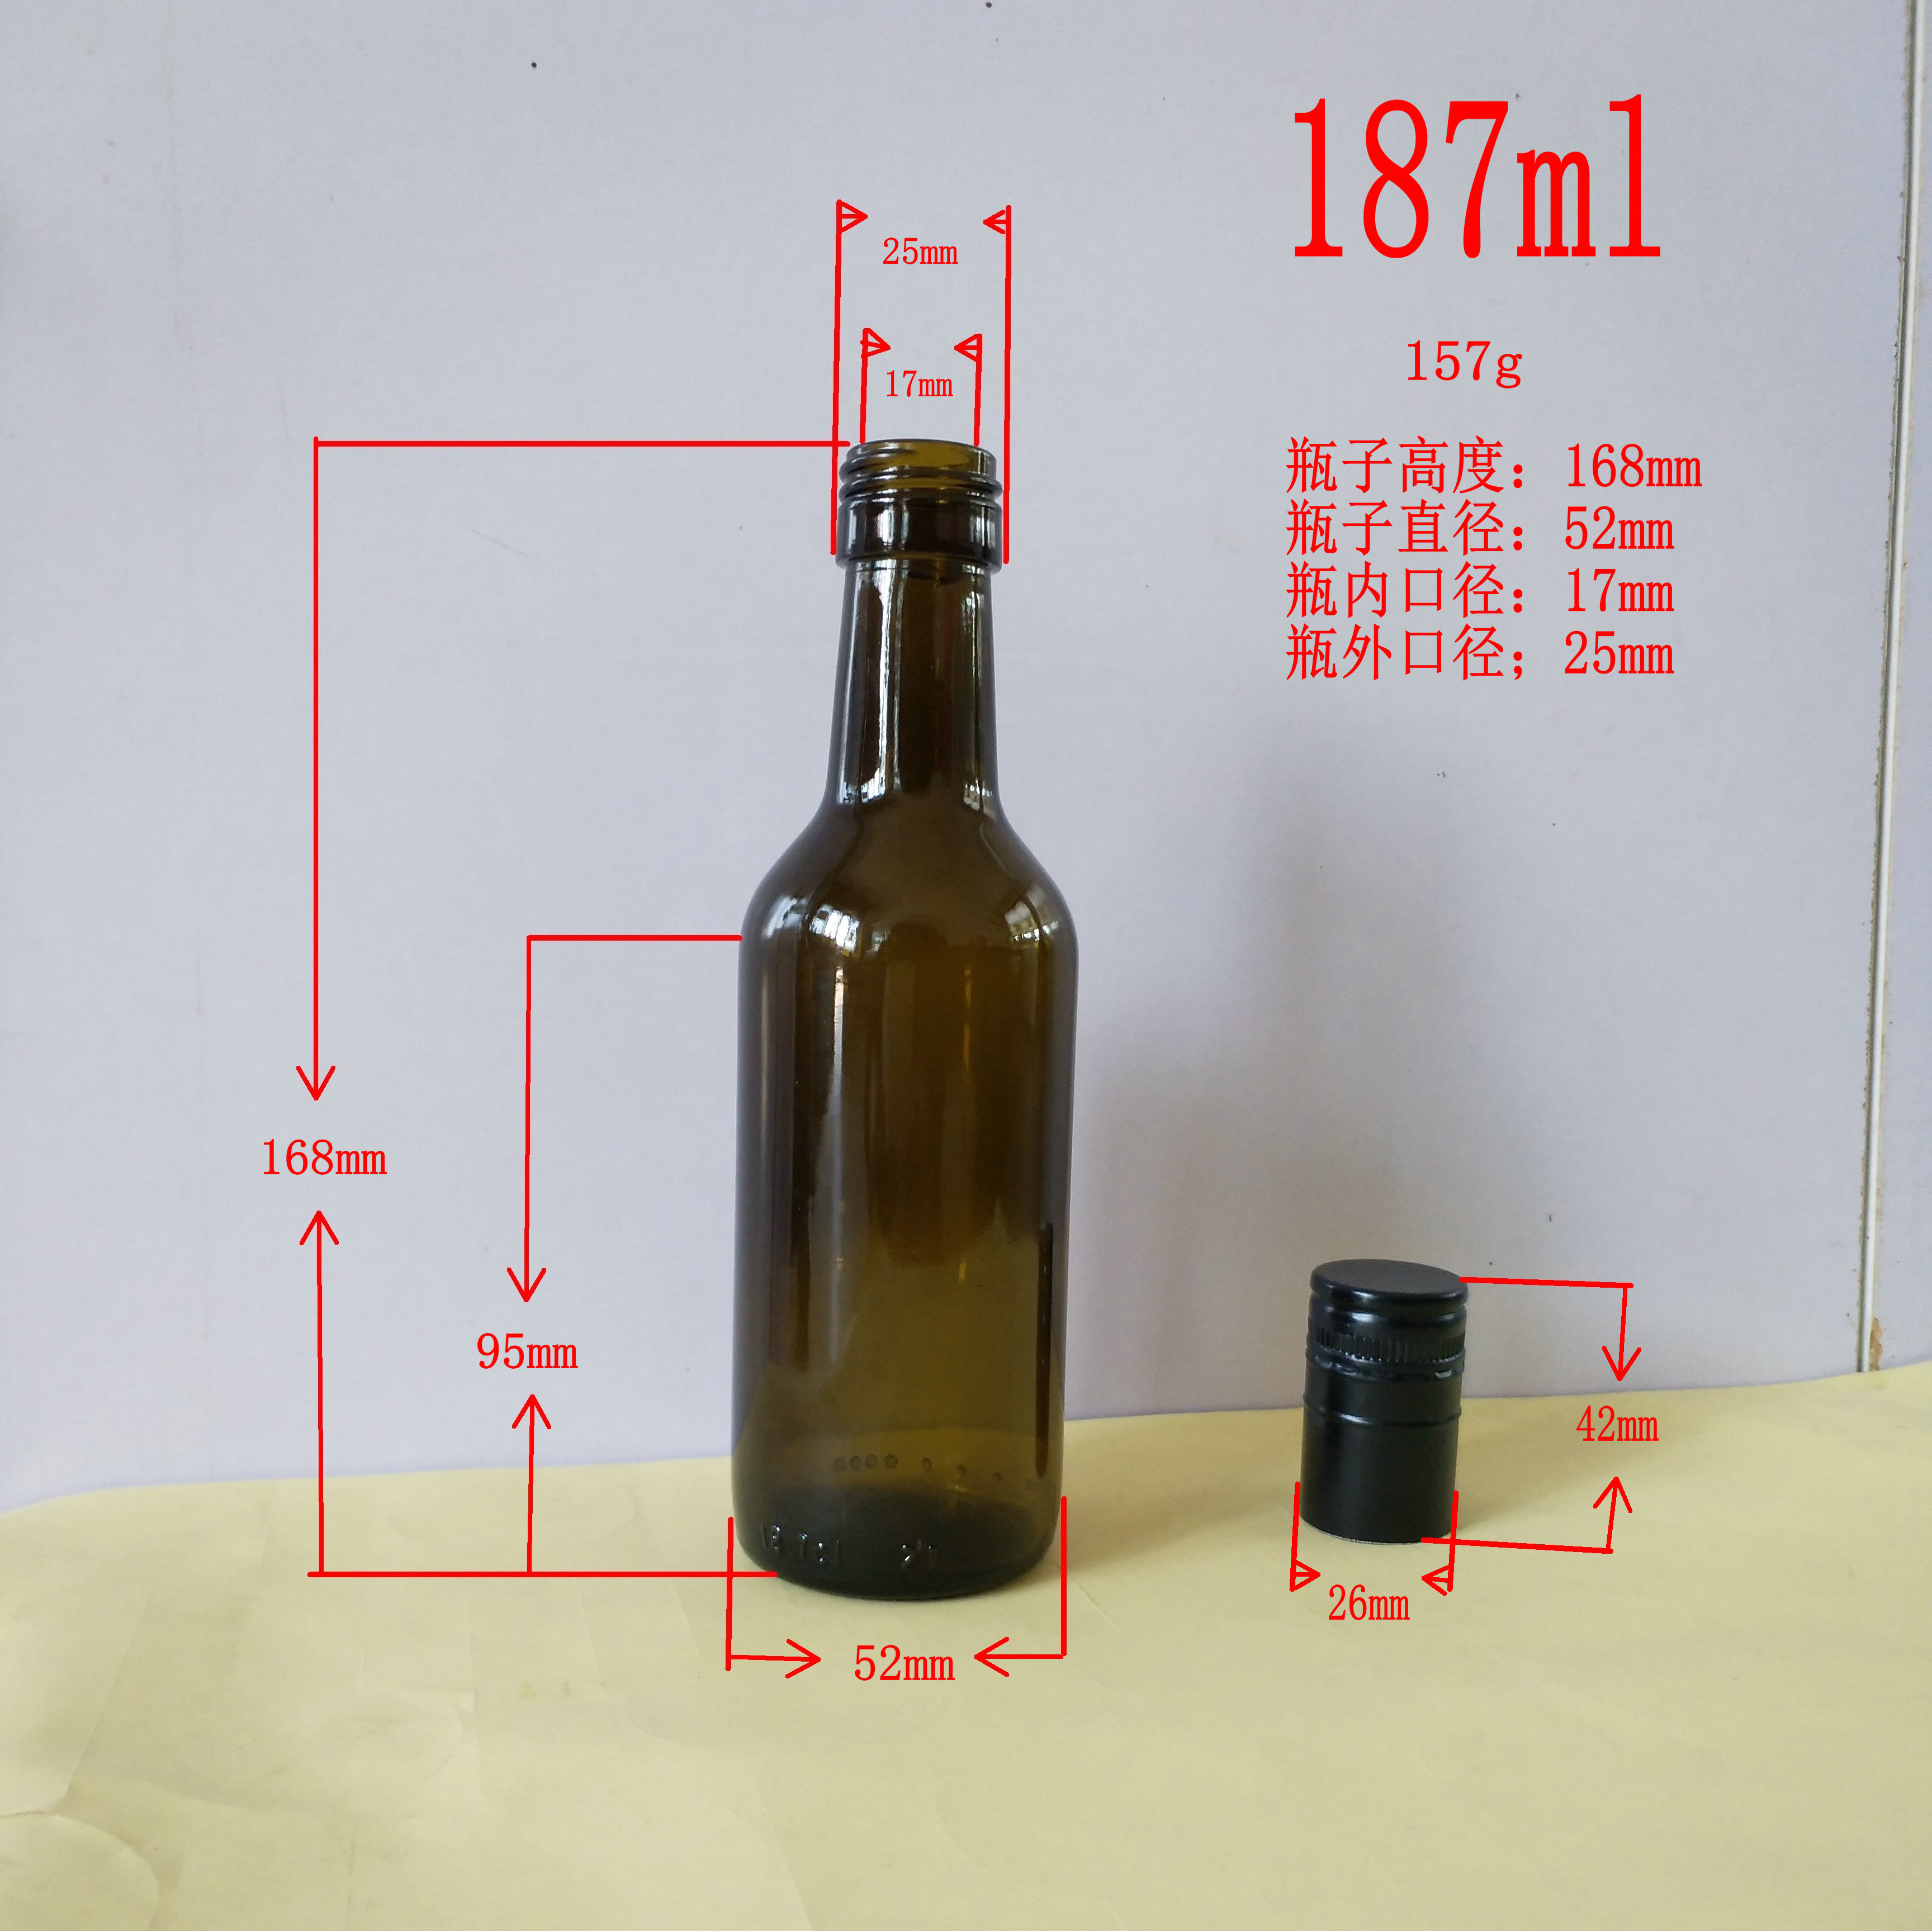 红酒瓶,隆安葡萄酒玻璃瓶,果酒瓶生产厂家,187ml200ml300ml375ml480ml